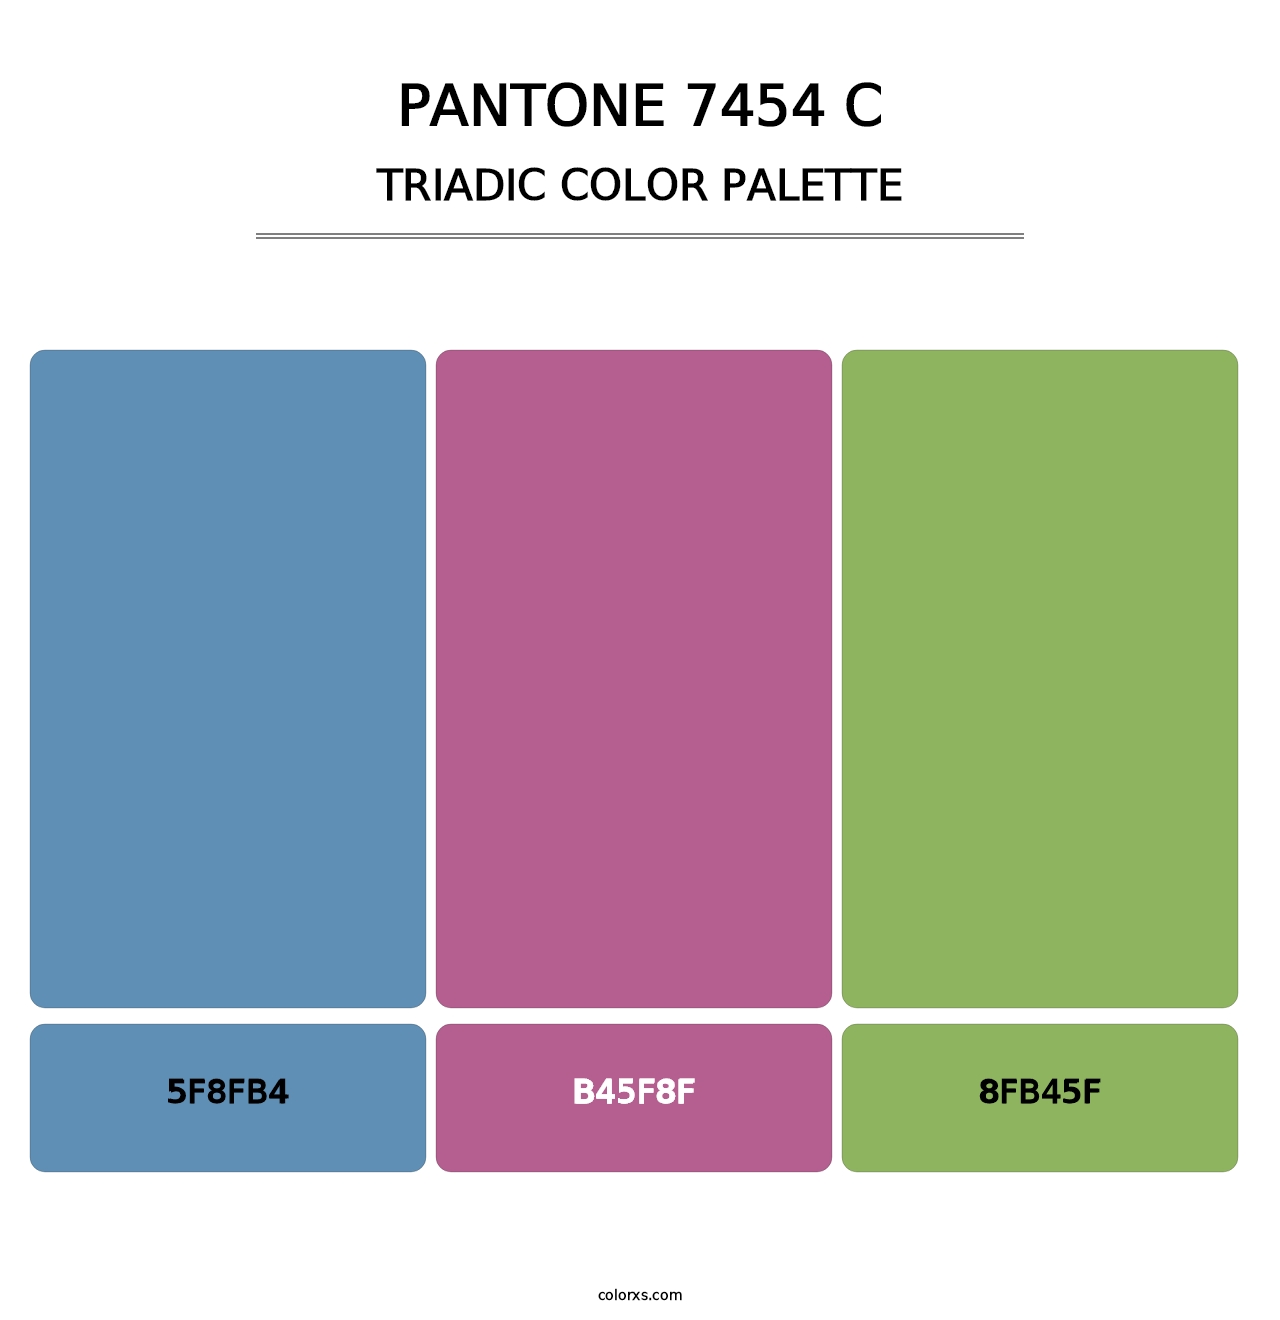 PANTONE 7454 C - Triadic Color Palette